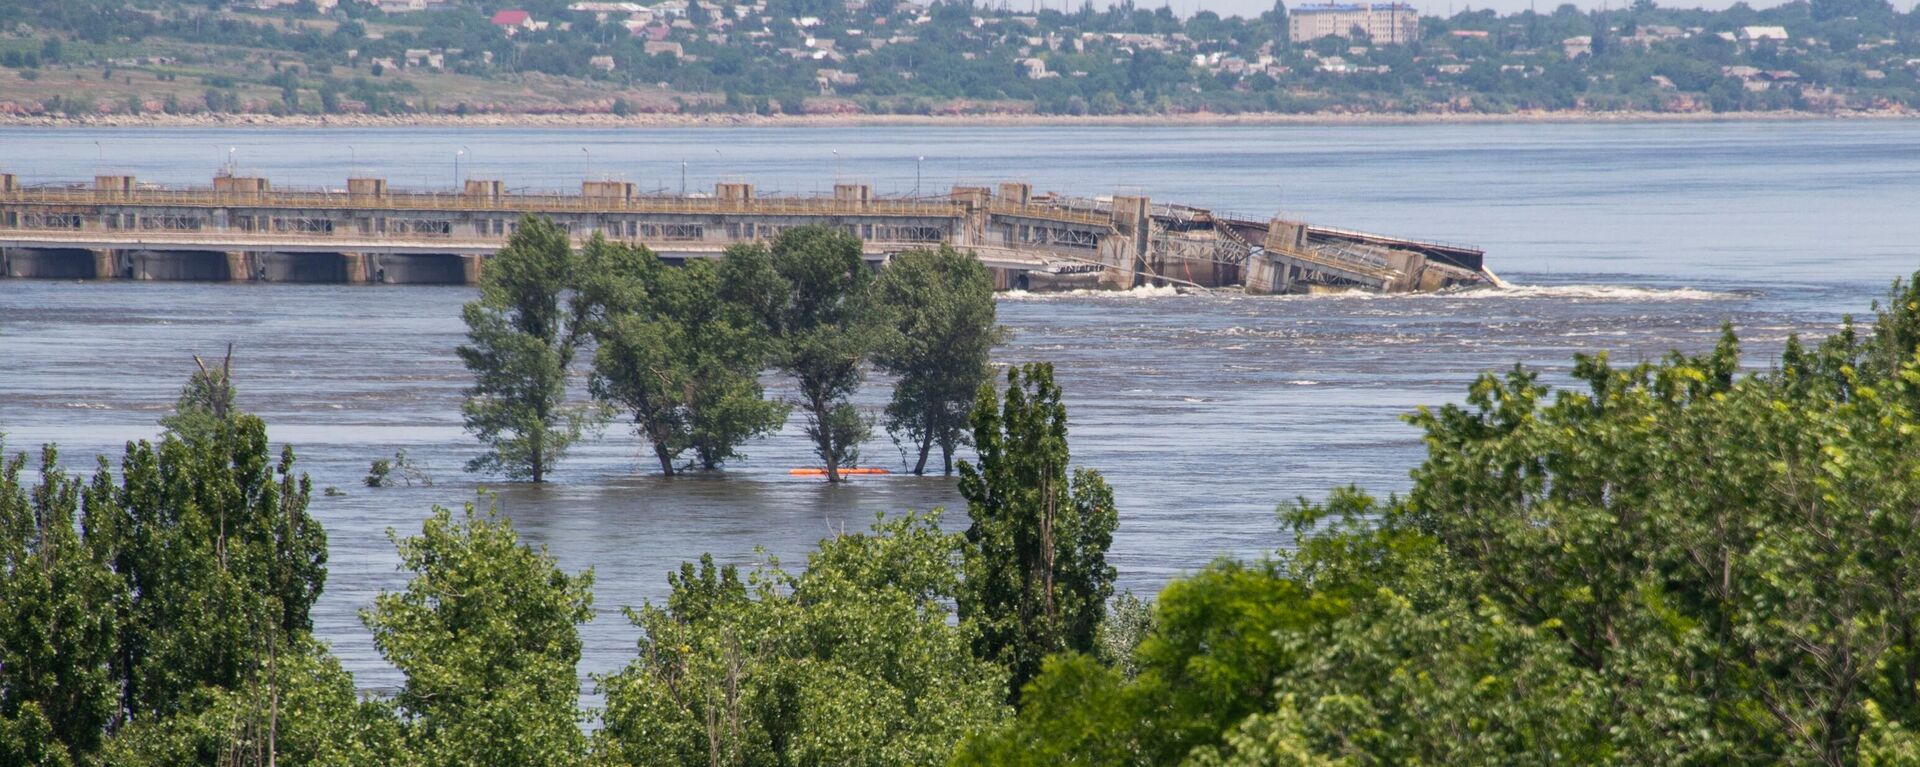 La presa hidroeléctrica de Kajovka, destruida por los ucranianos - Sputnik Mundo, 1920, 18.12.2023